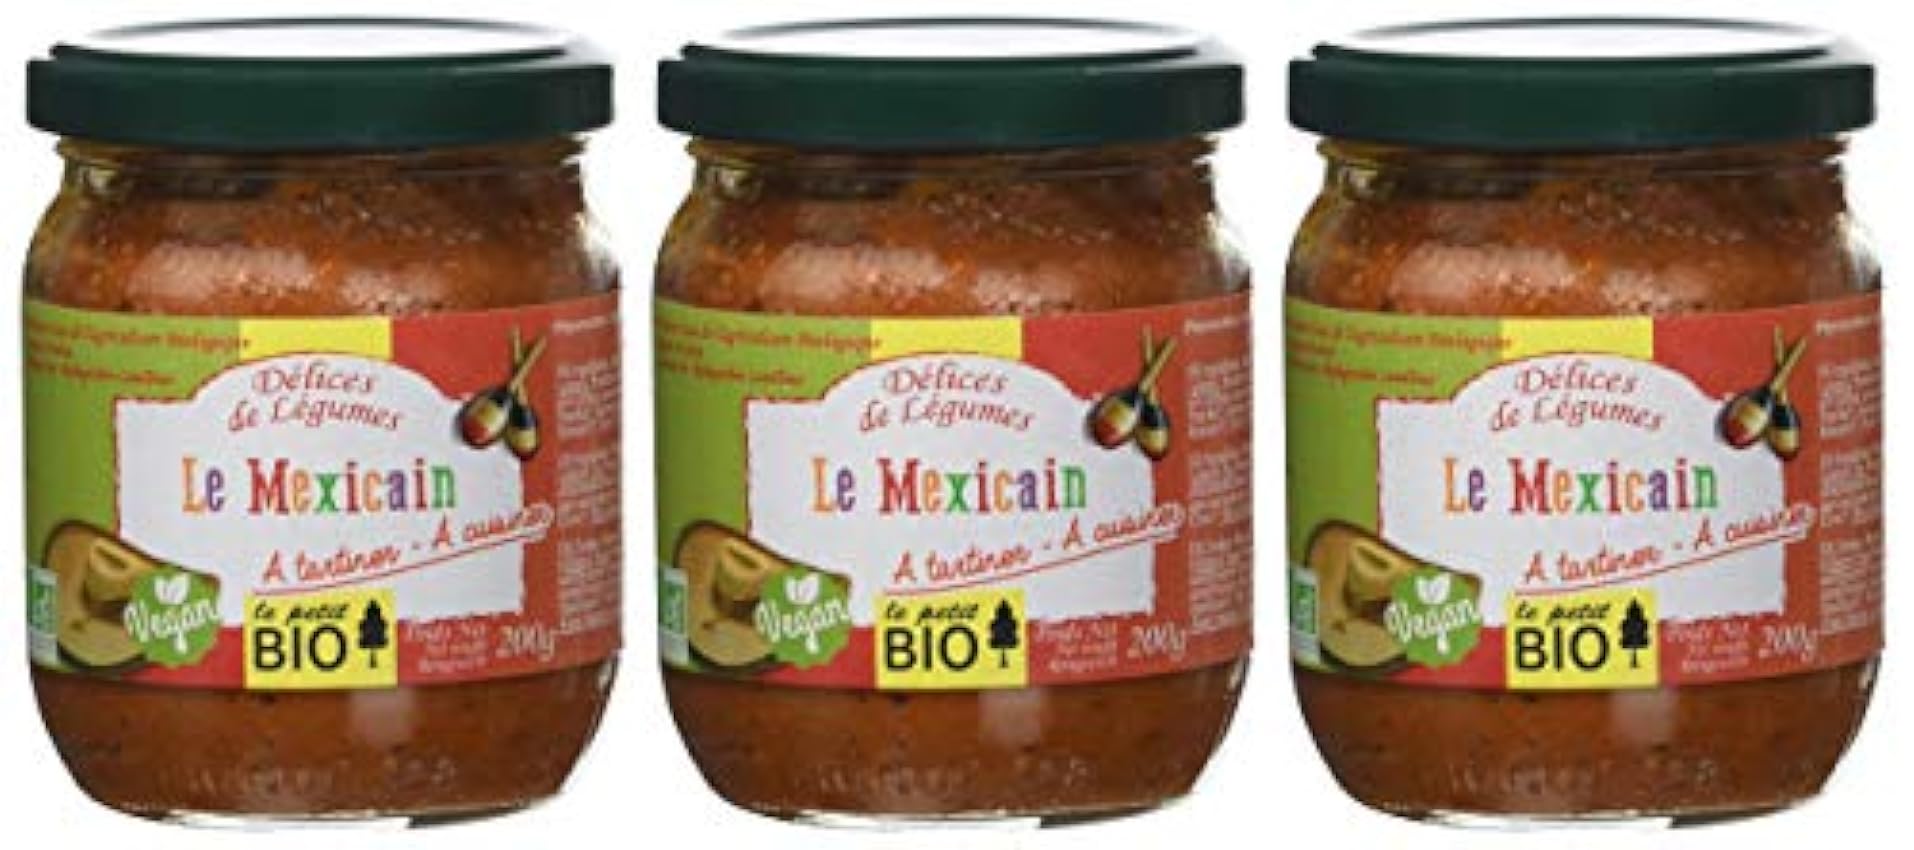 Petit Bio Délice de Légumes Le Mexicain 200 g - Lot de 3 kSkcq9nw